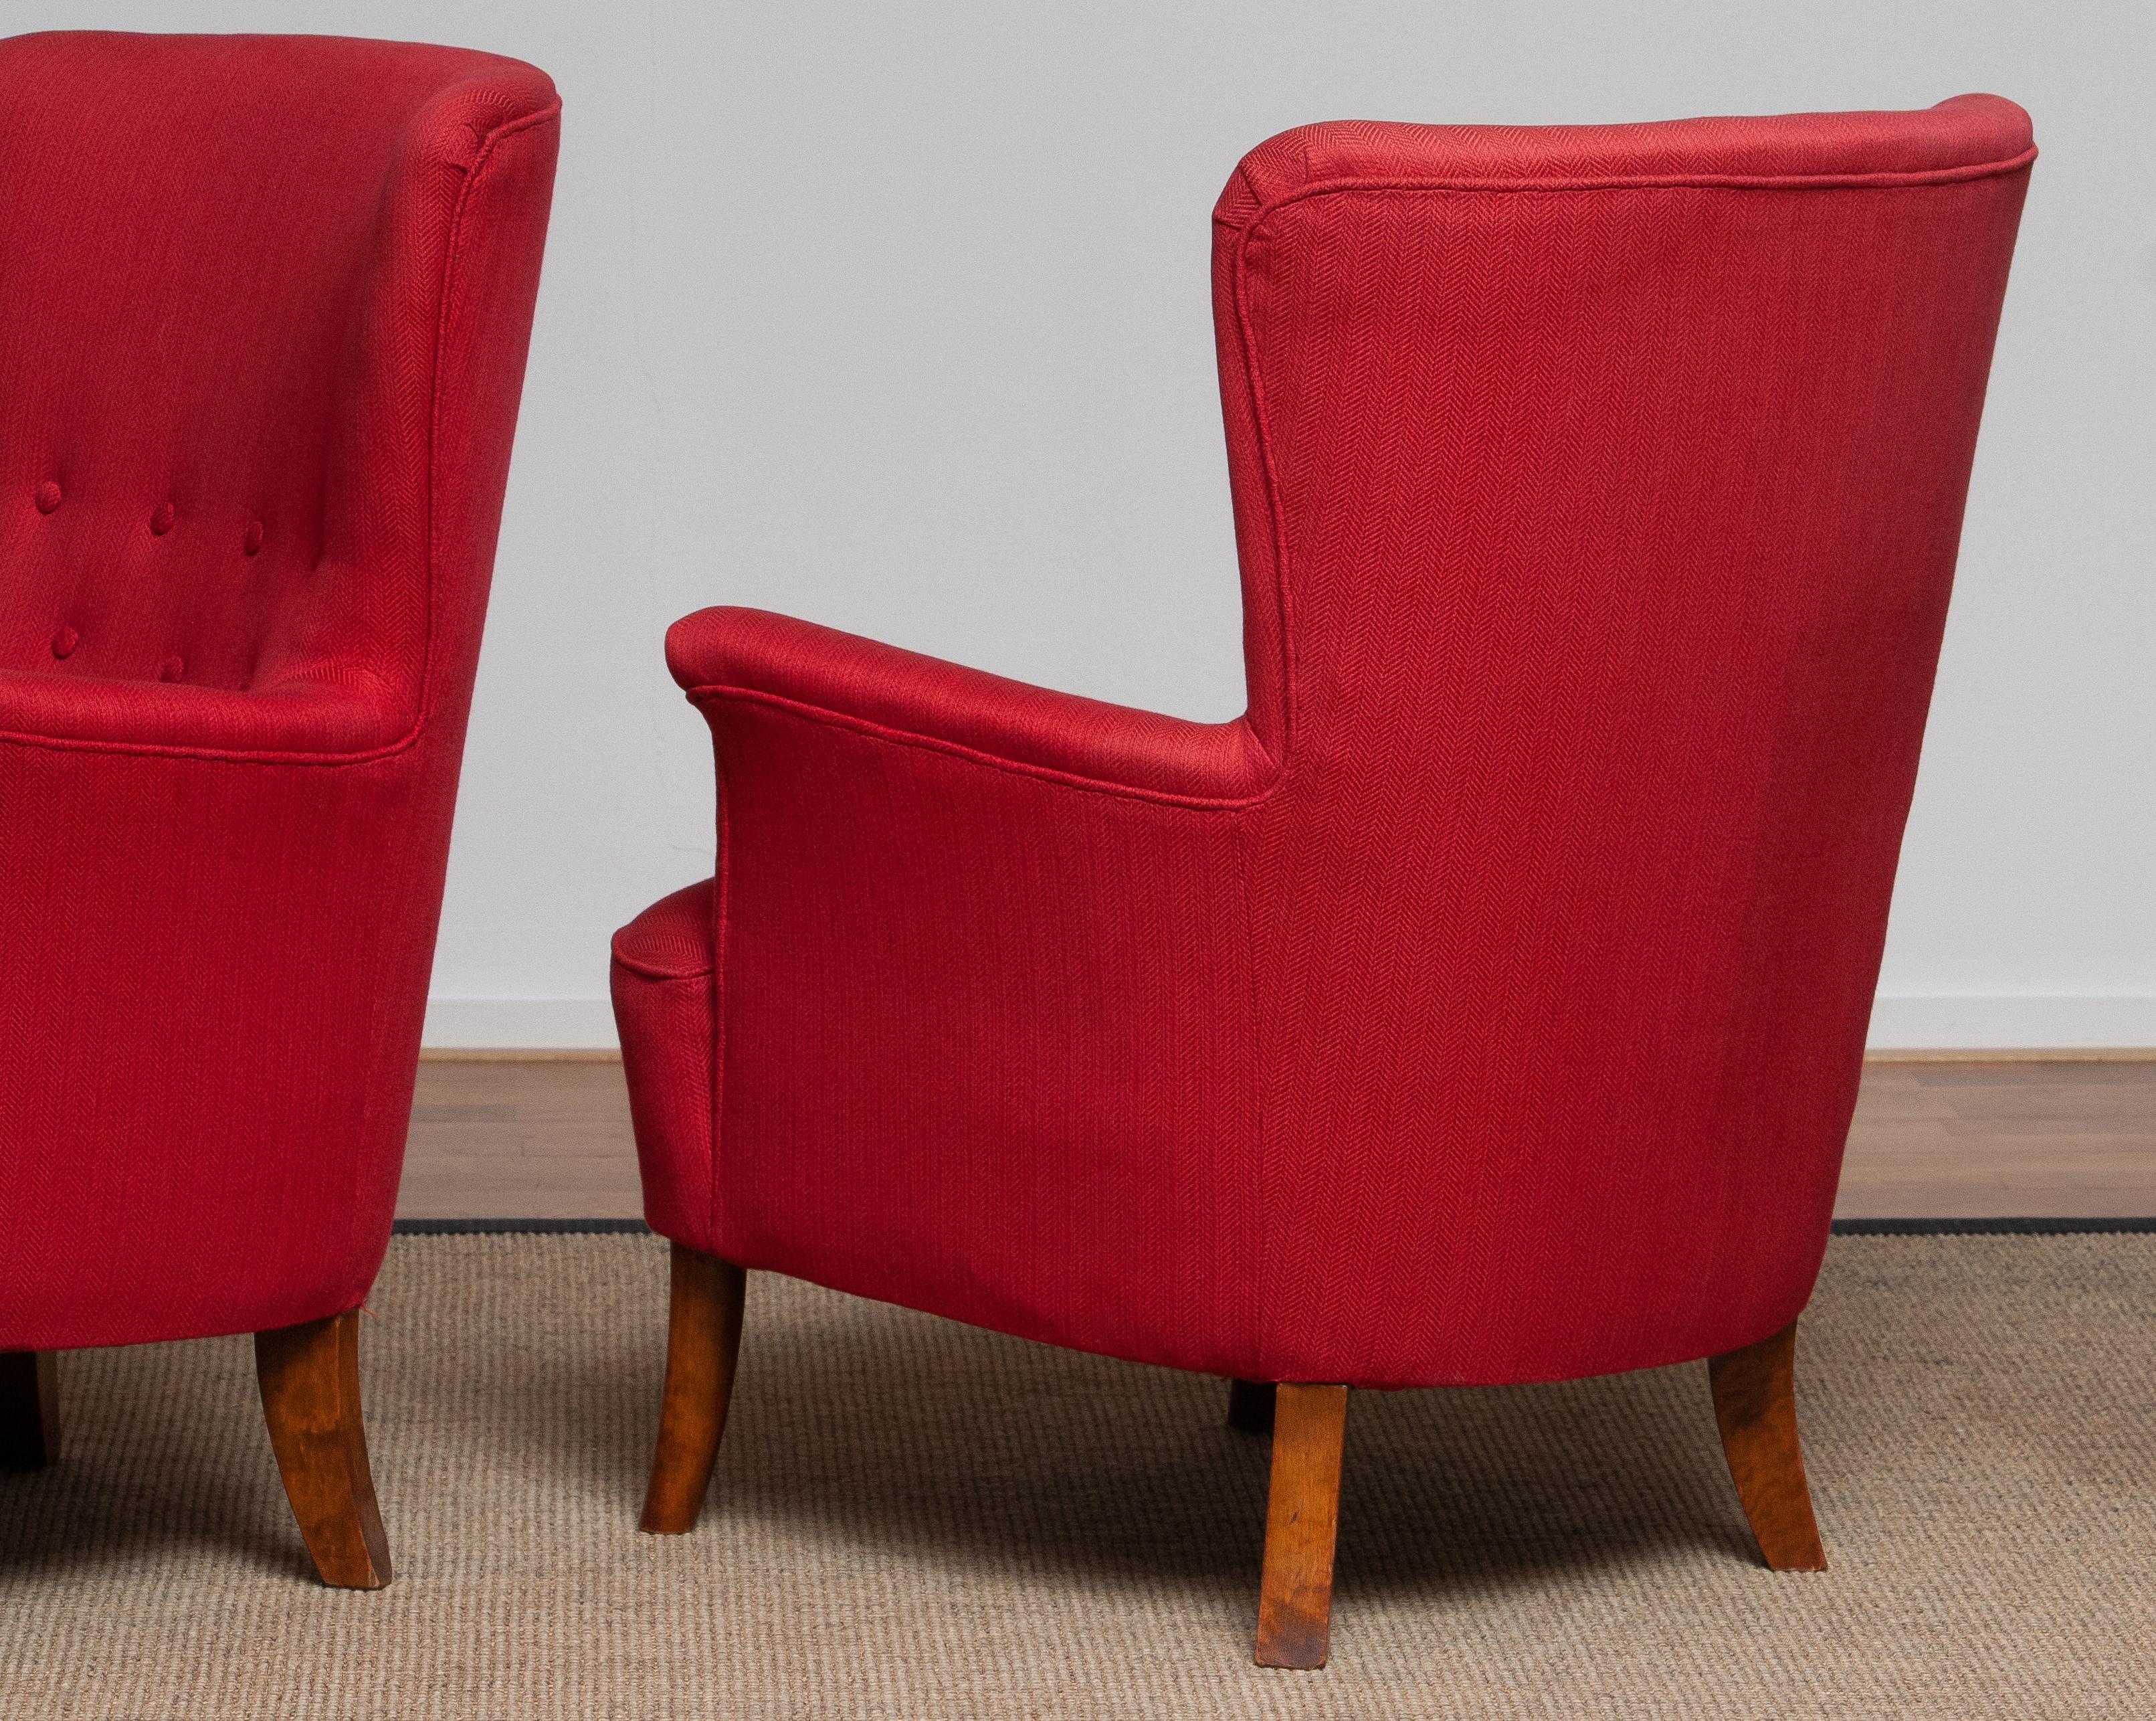 1940s, Pair of Fuchsia Easy / Lounge Chair by Carl Malmsten for Oh Sjogren 1